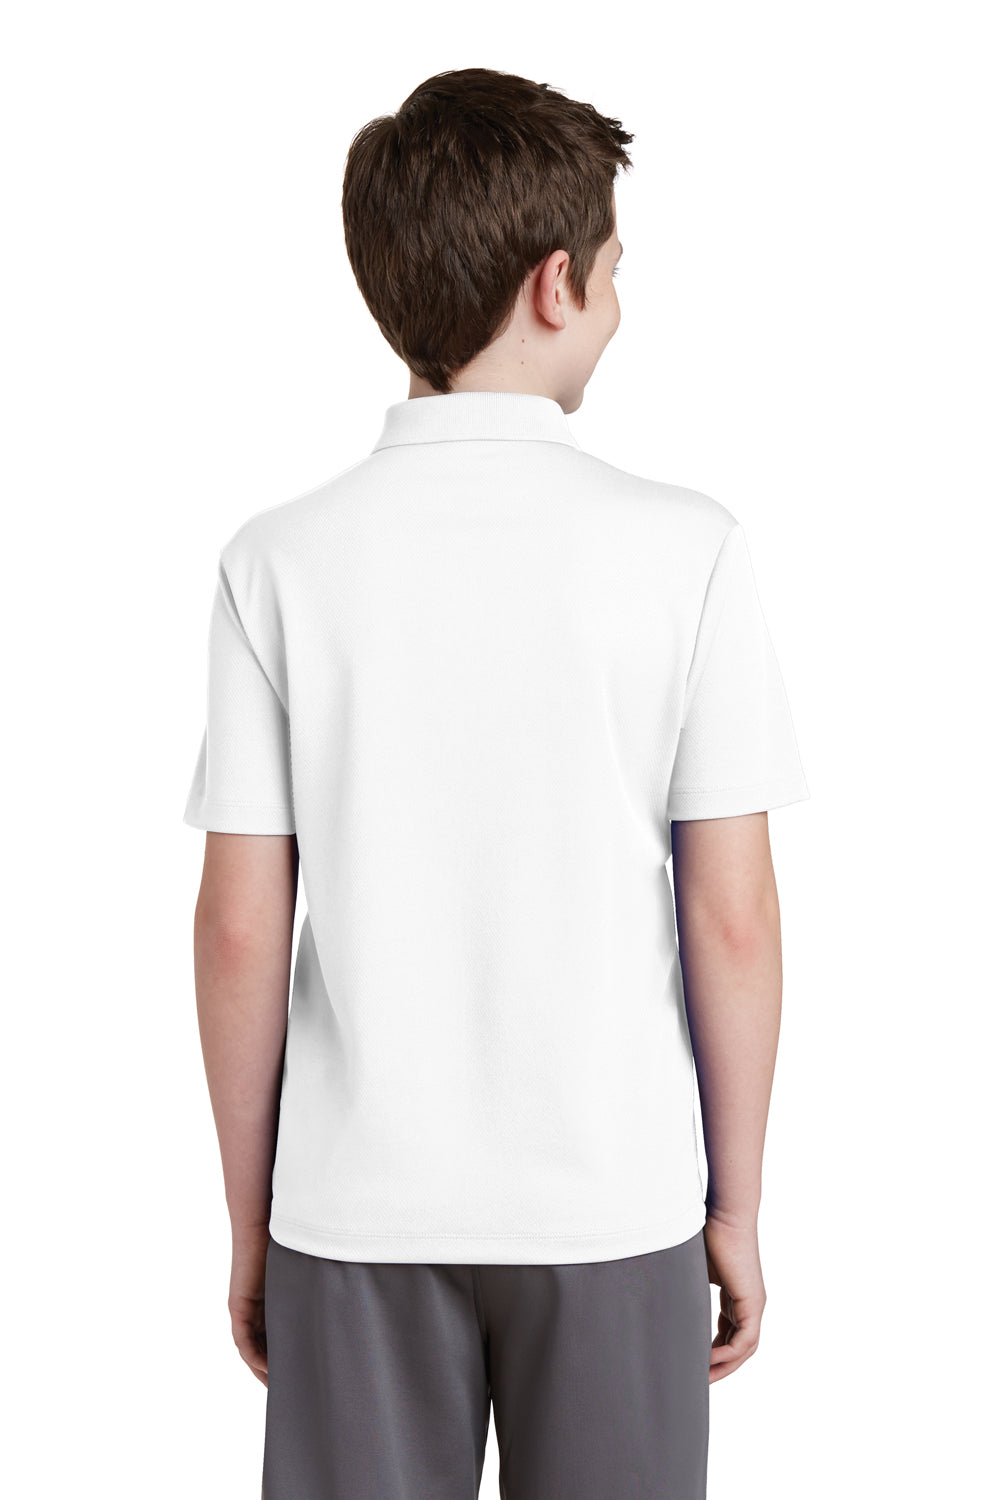 Sport-Tek YST640 Youth RacerMesh Moisture Wicking Short Sleeve Polo Shirt White Back